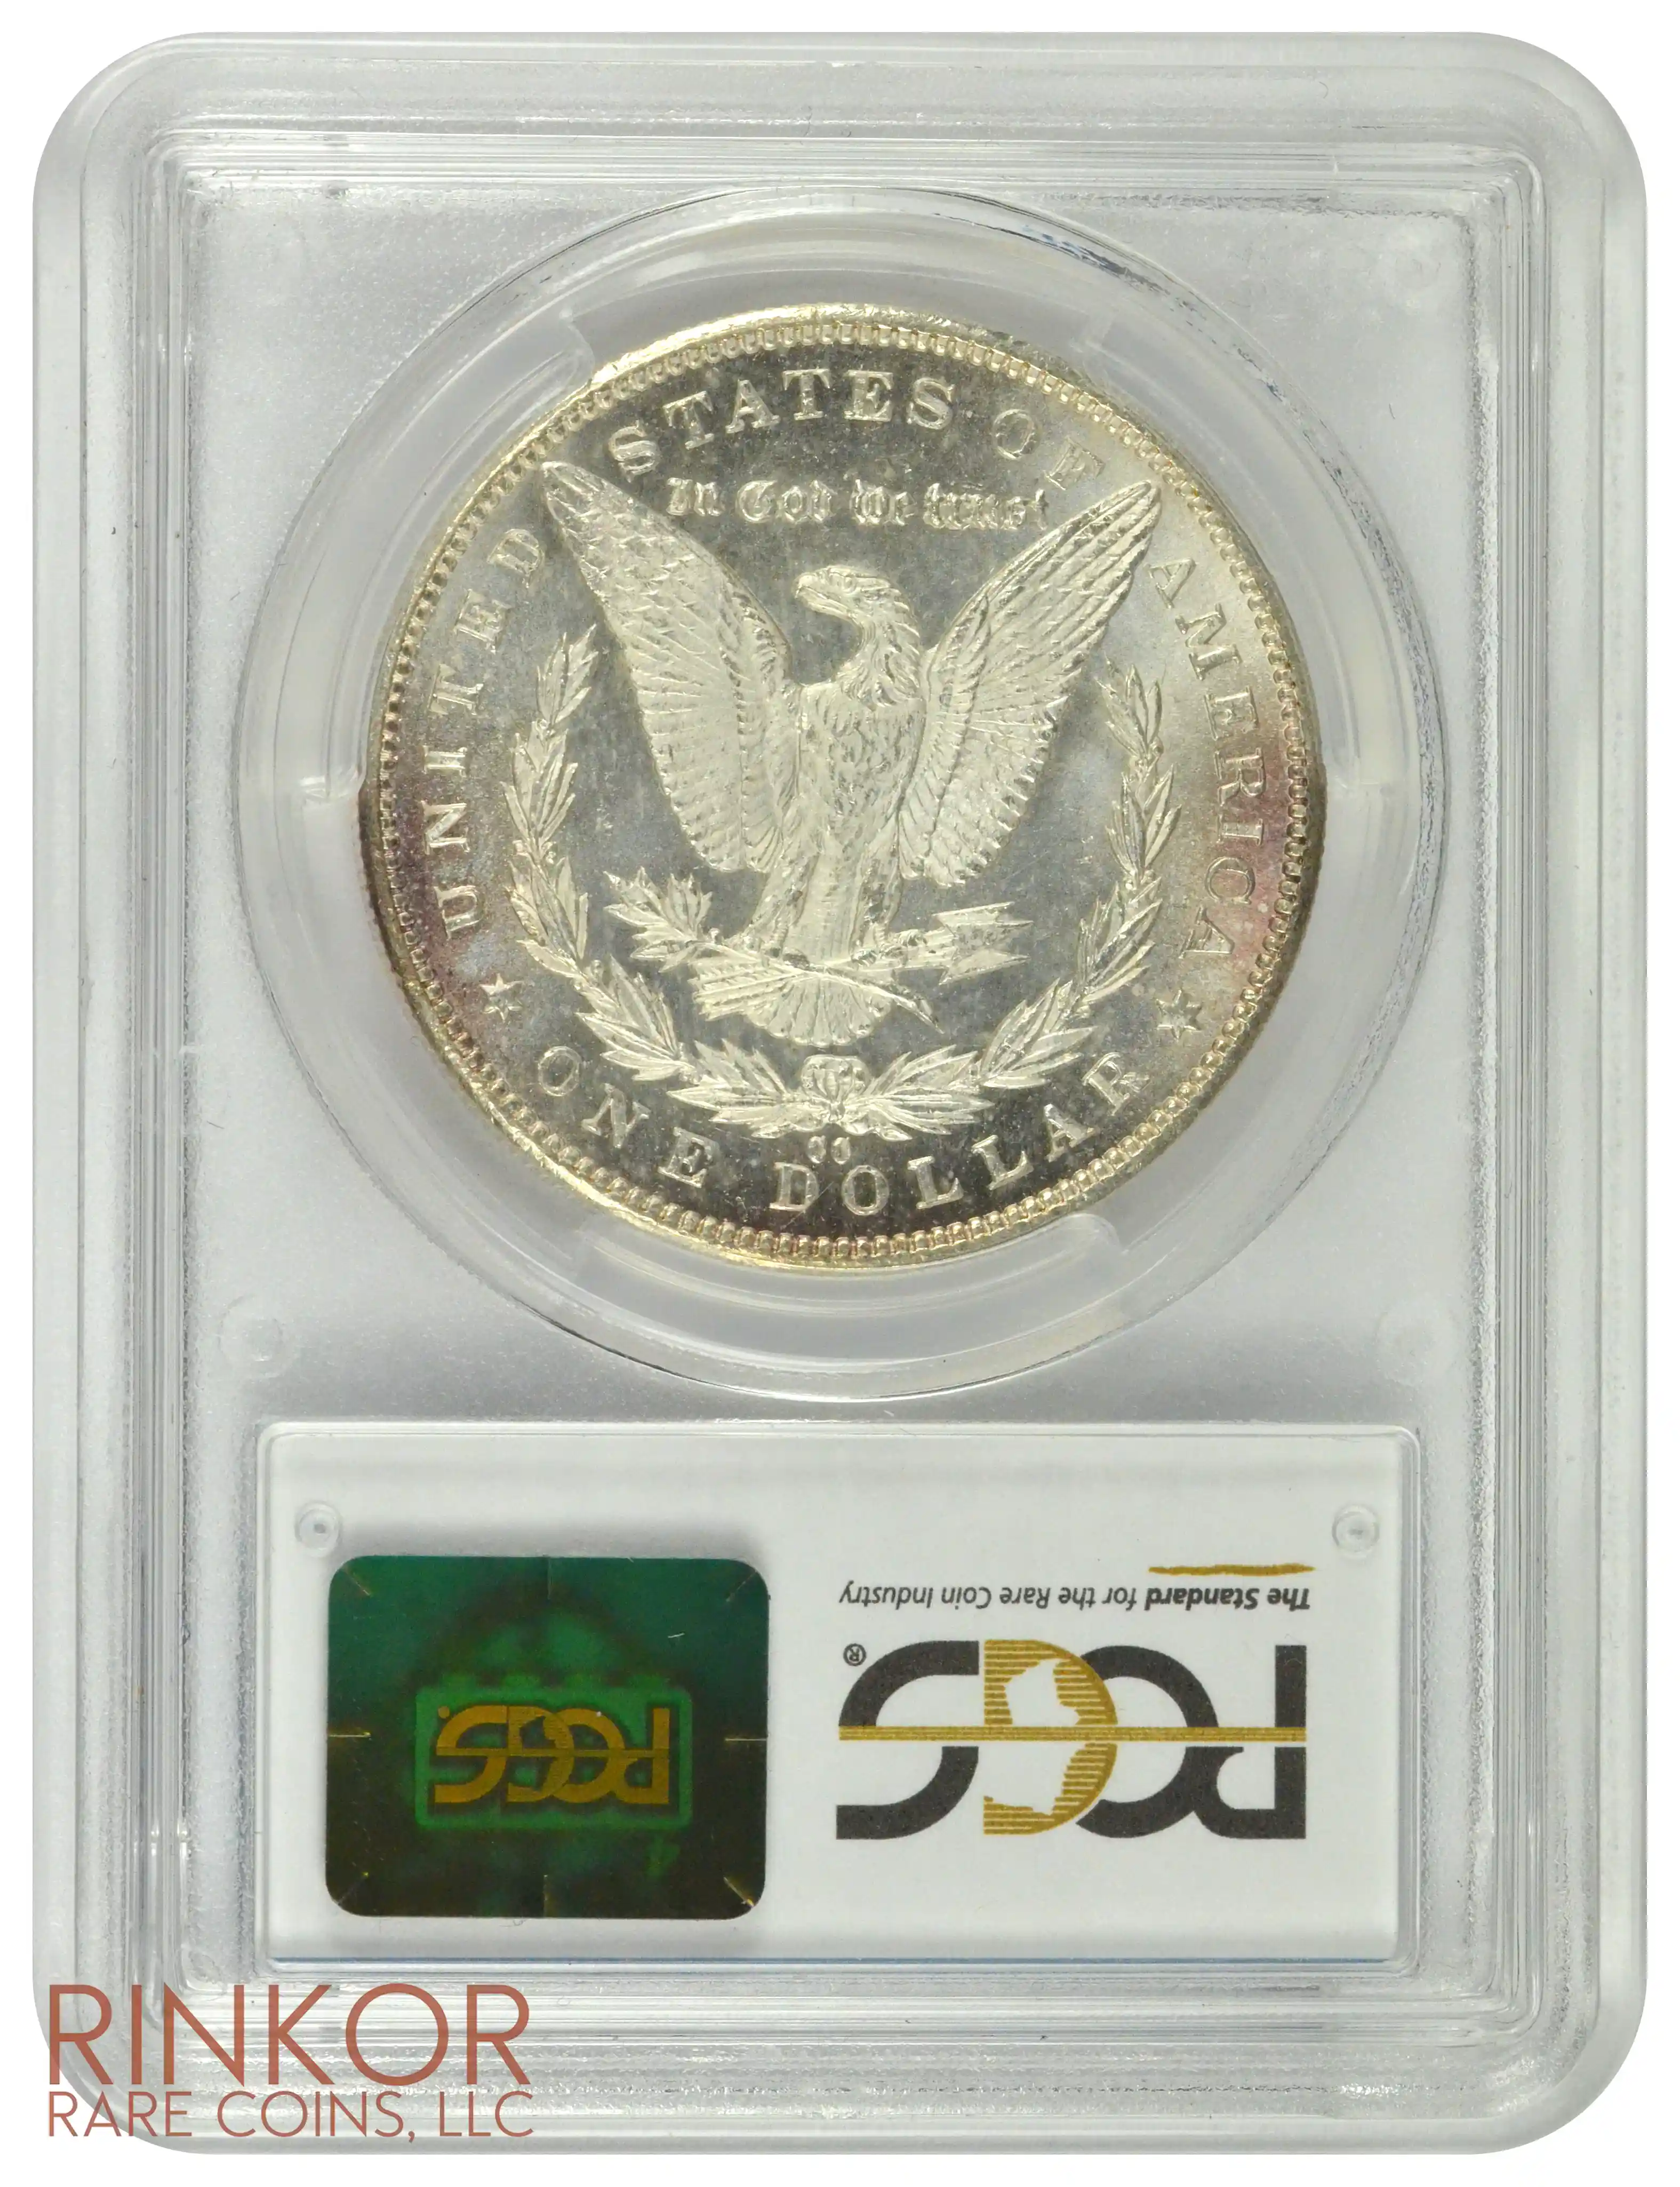 1892-CC $1 PCGS MS 64 PL